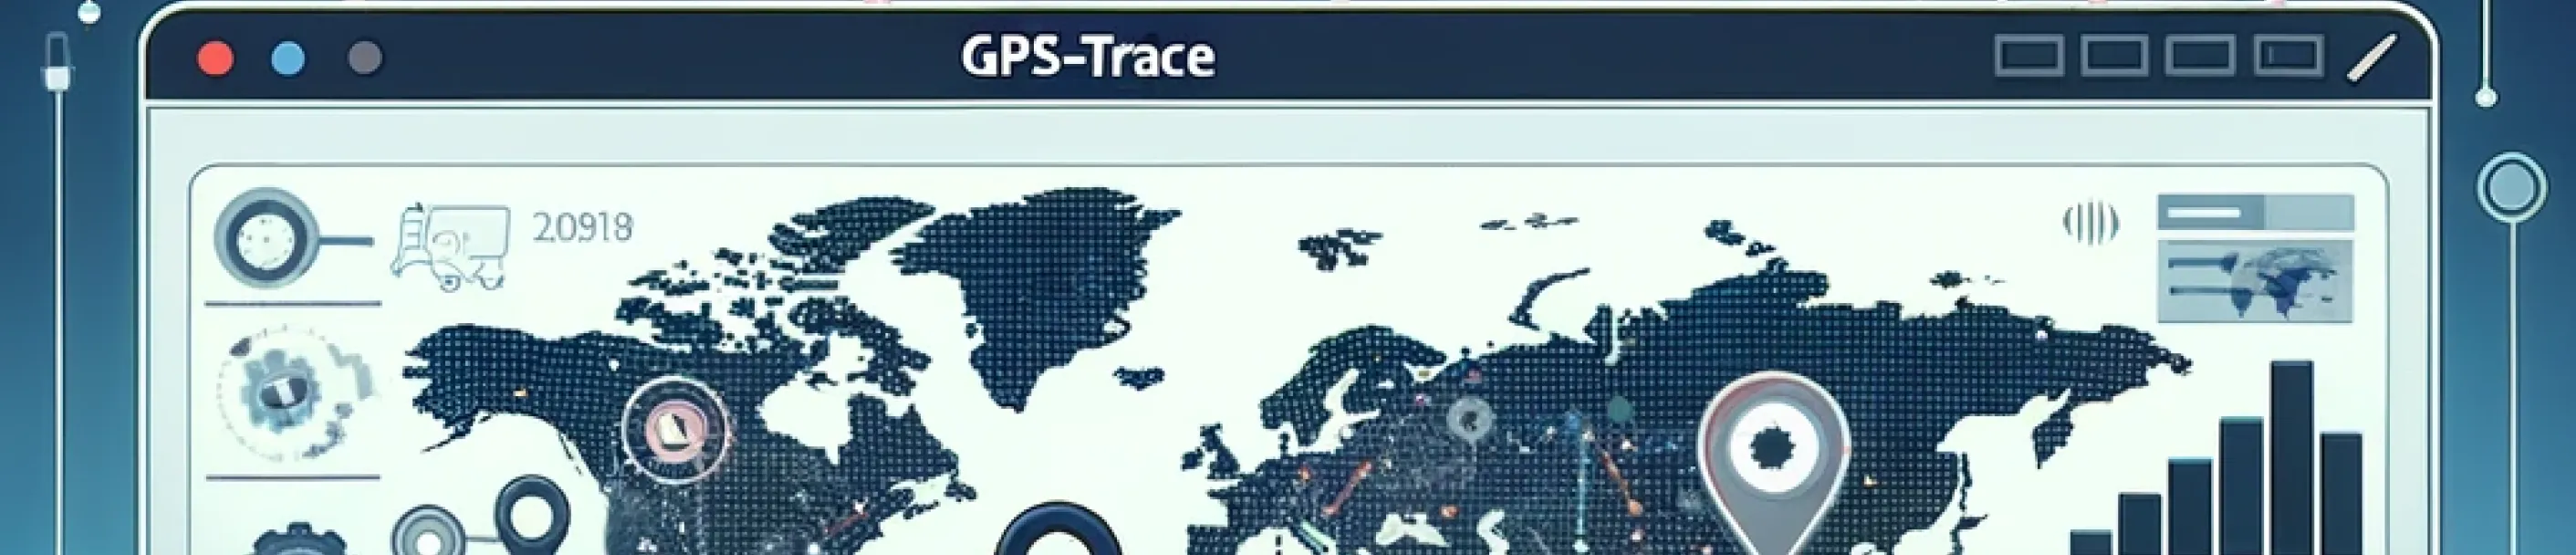 Red de socios GPS-Trace